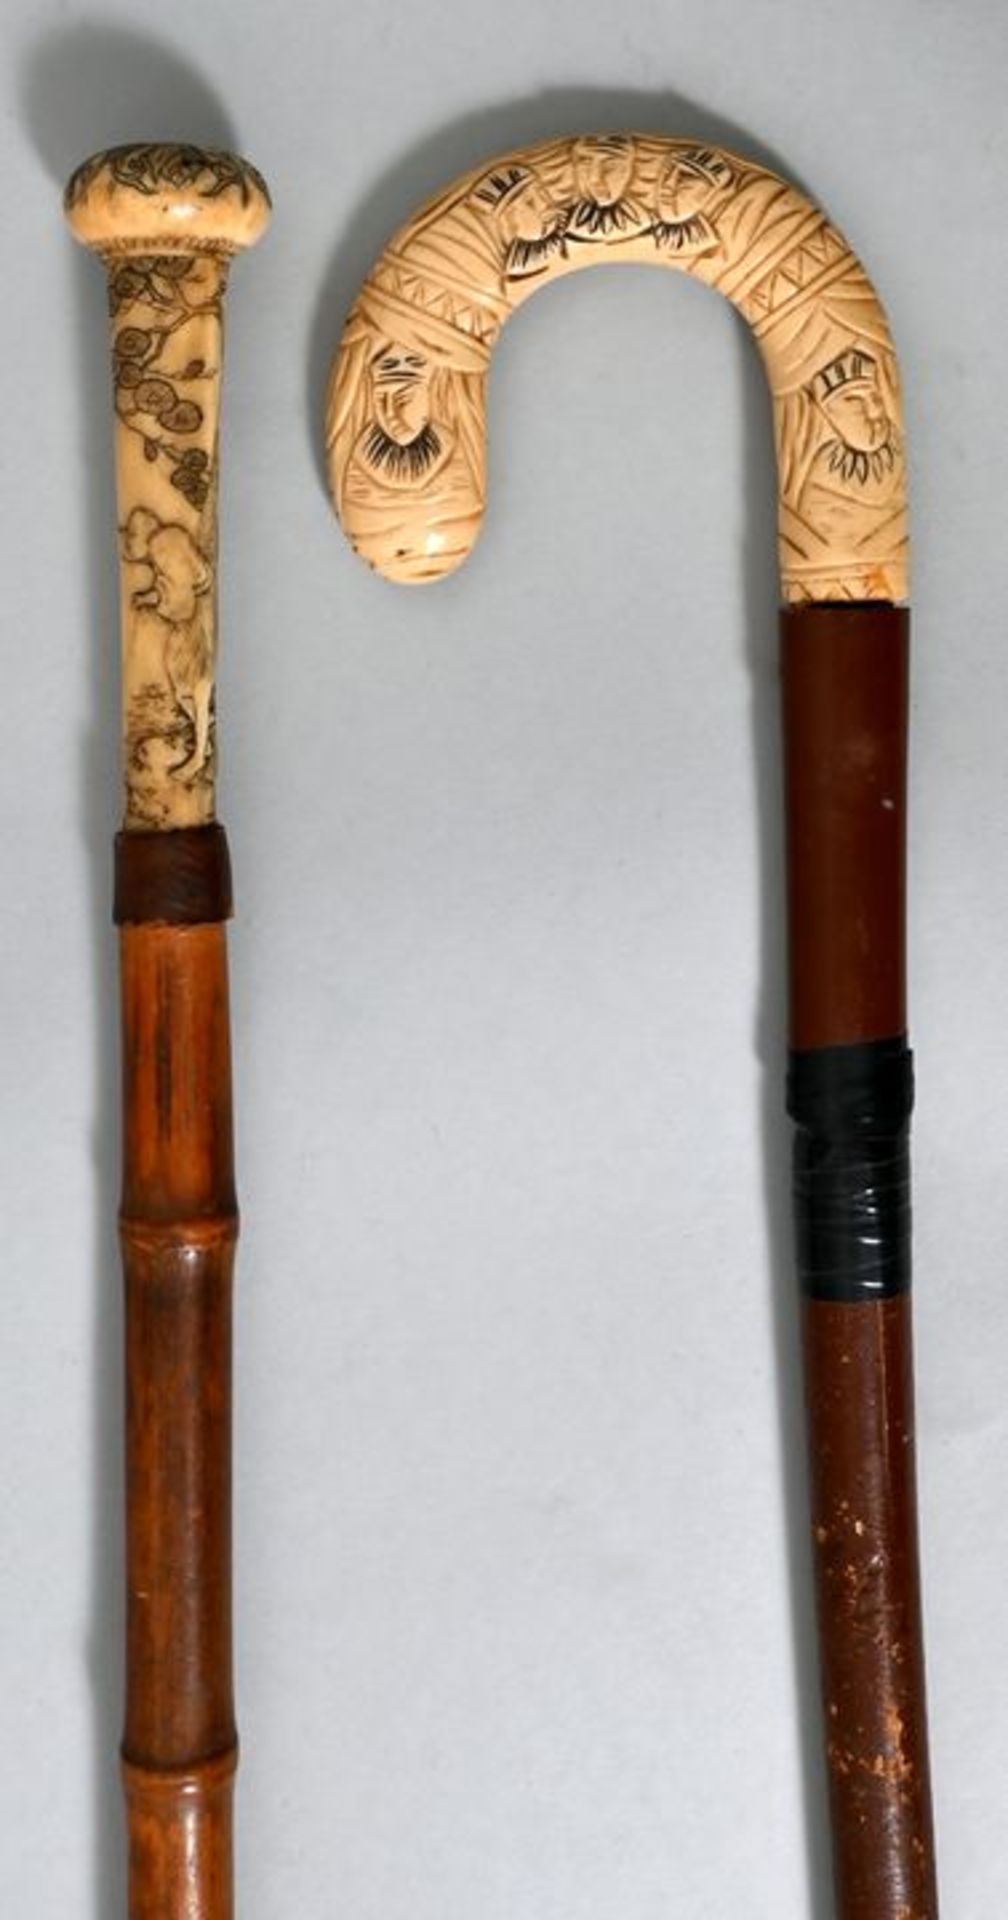 Zwei Spazierstöcke, Japan, 19. Jh.a) Pilzförmiger Knaufgriff, Elfenbein o. Bein, in detailr